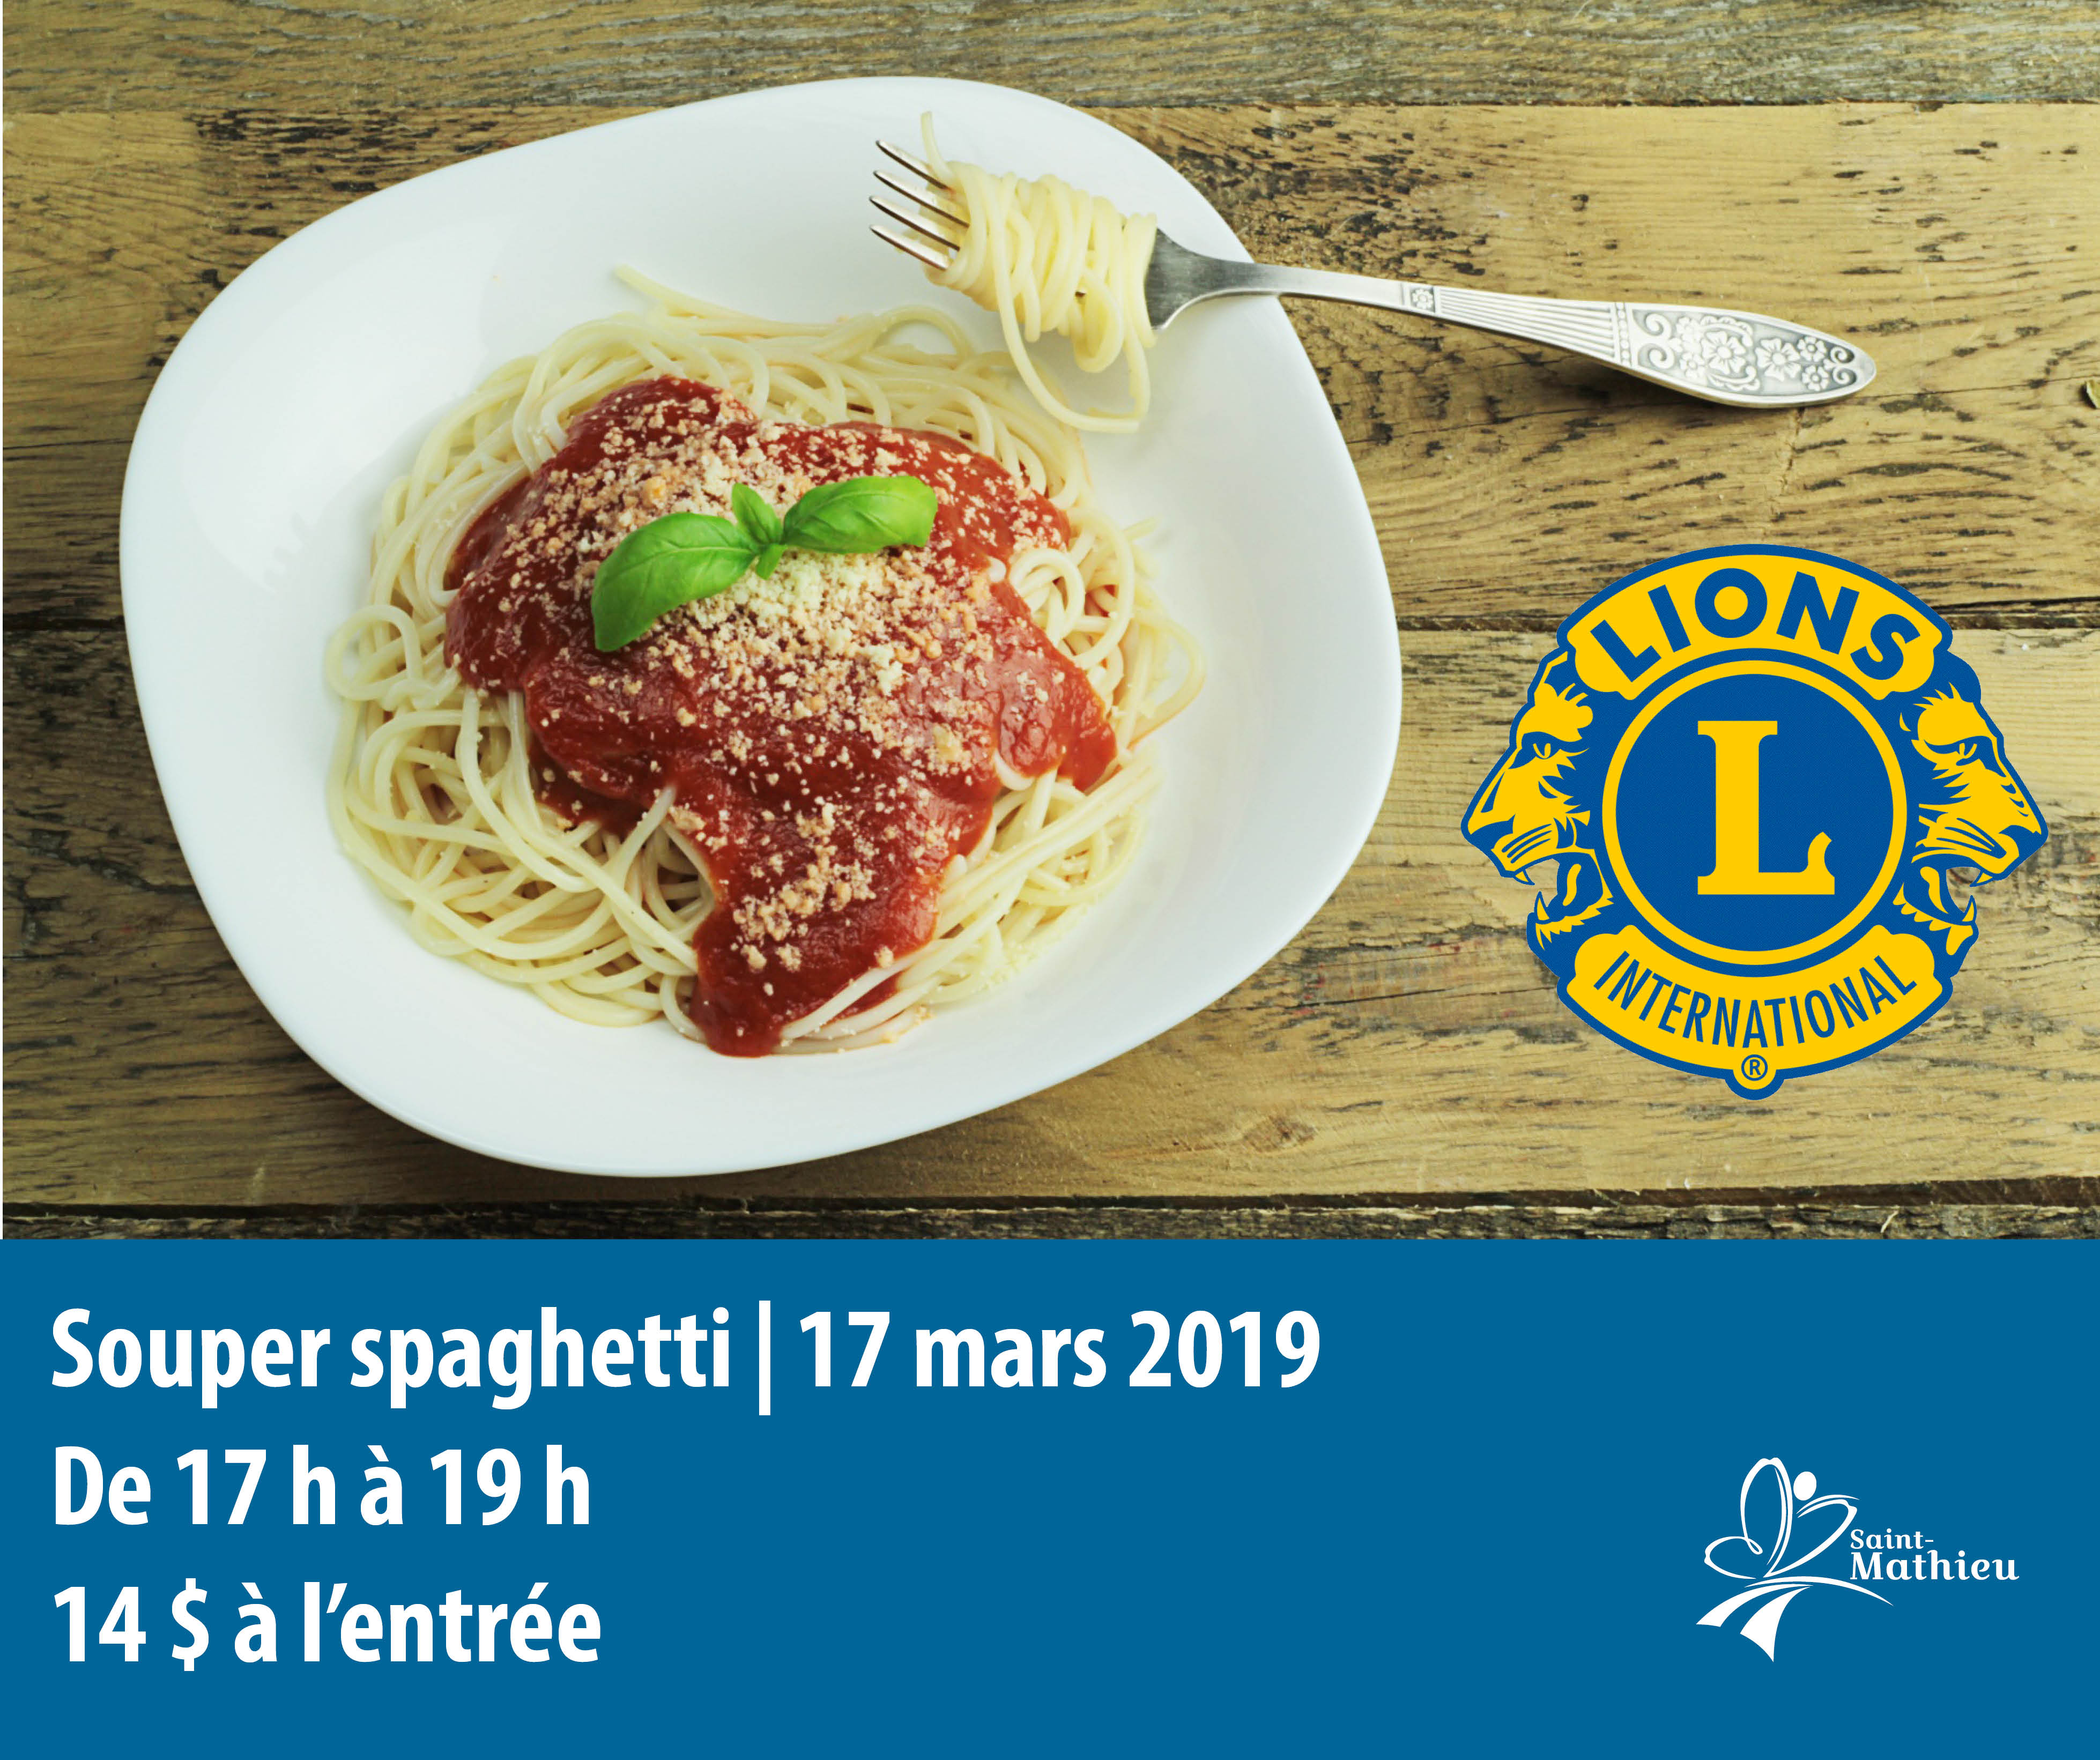 Souper spaghetti | Club Lions